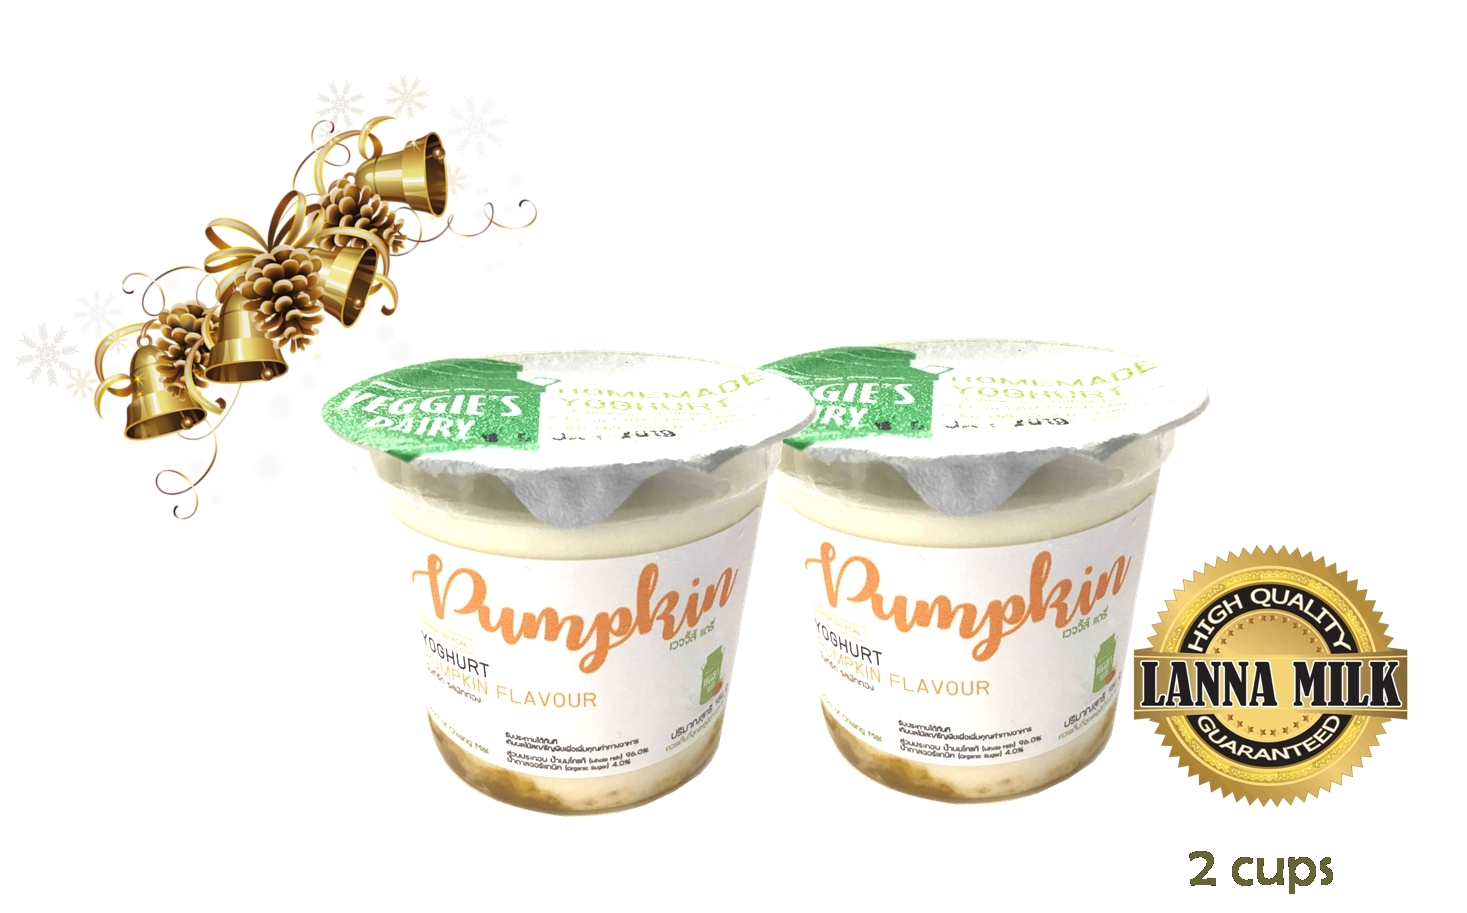 โยเกิร์ตโฮมเมด เวจจี้ส์แดรี่ 150กรัม แพค2ถ้วย รส ฟักทอง Homemade Yoghurt Veggie’s Dairy pumpkin Flavor (150 g) 2 cups